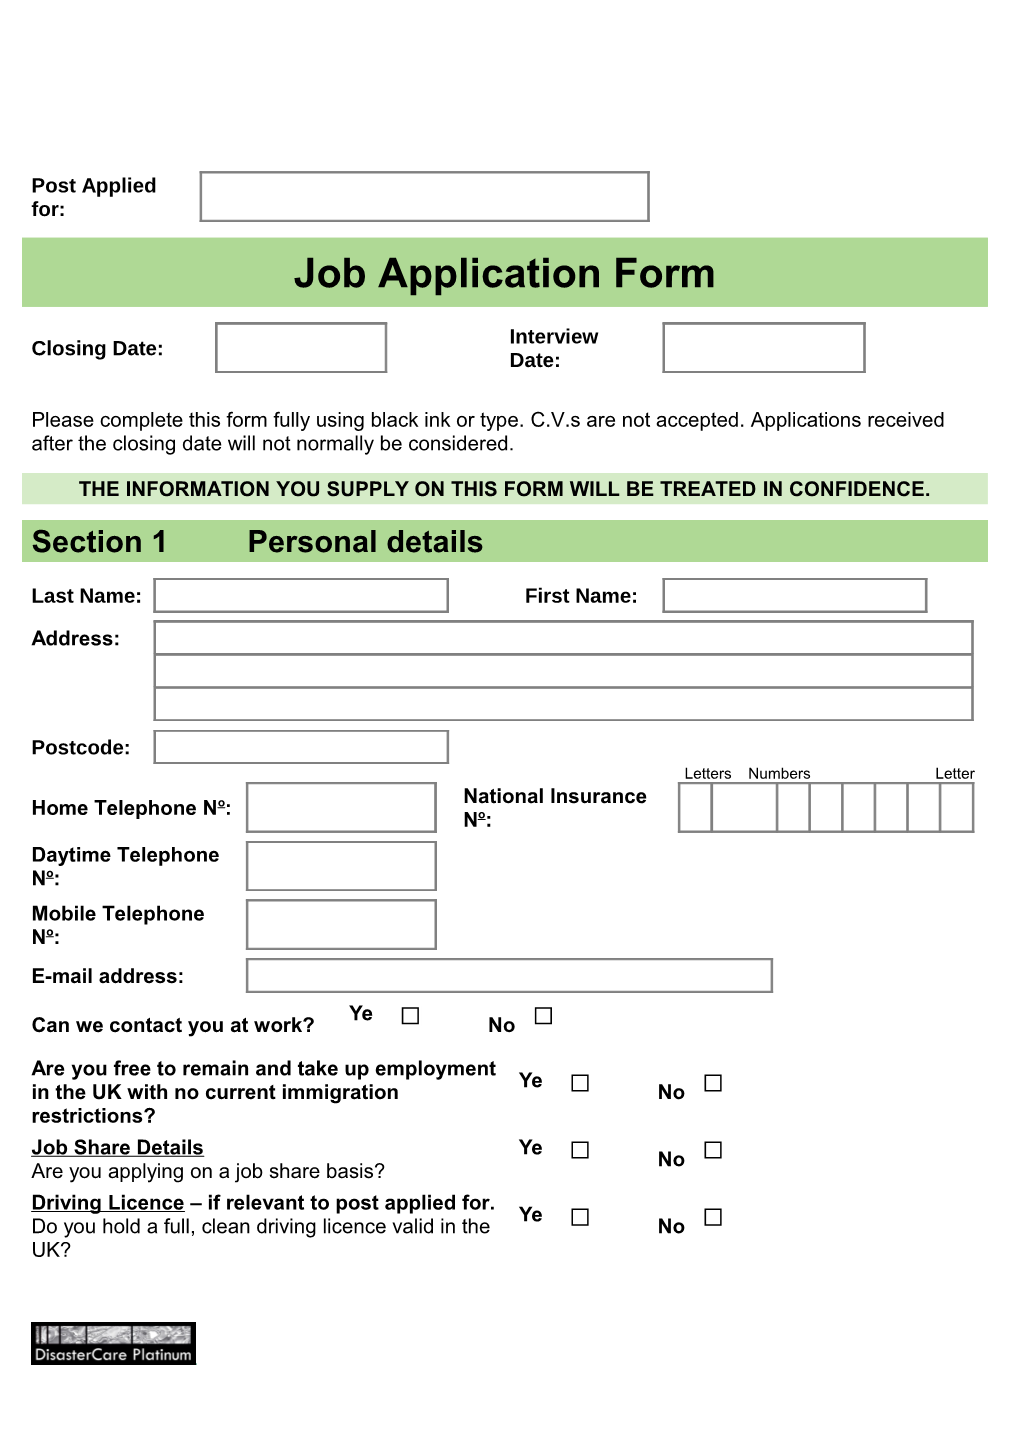 Job Application Form s41